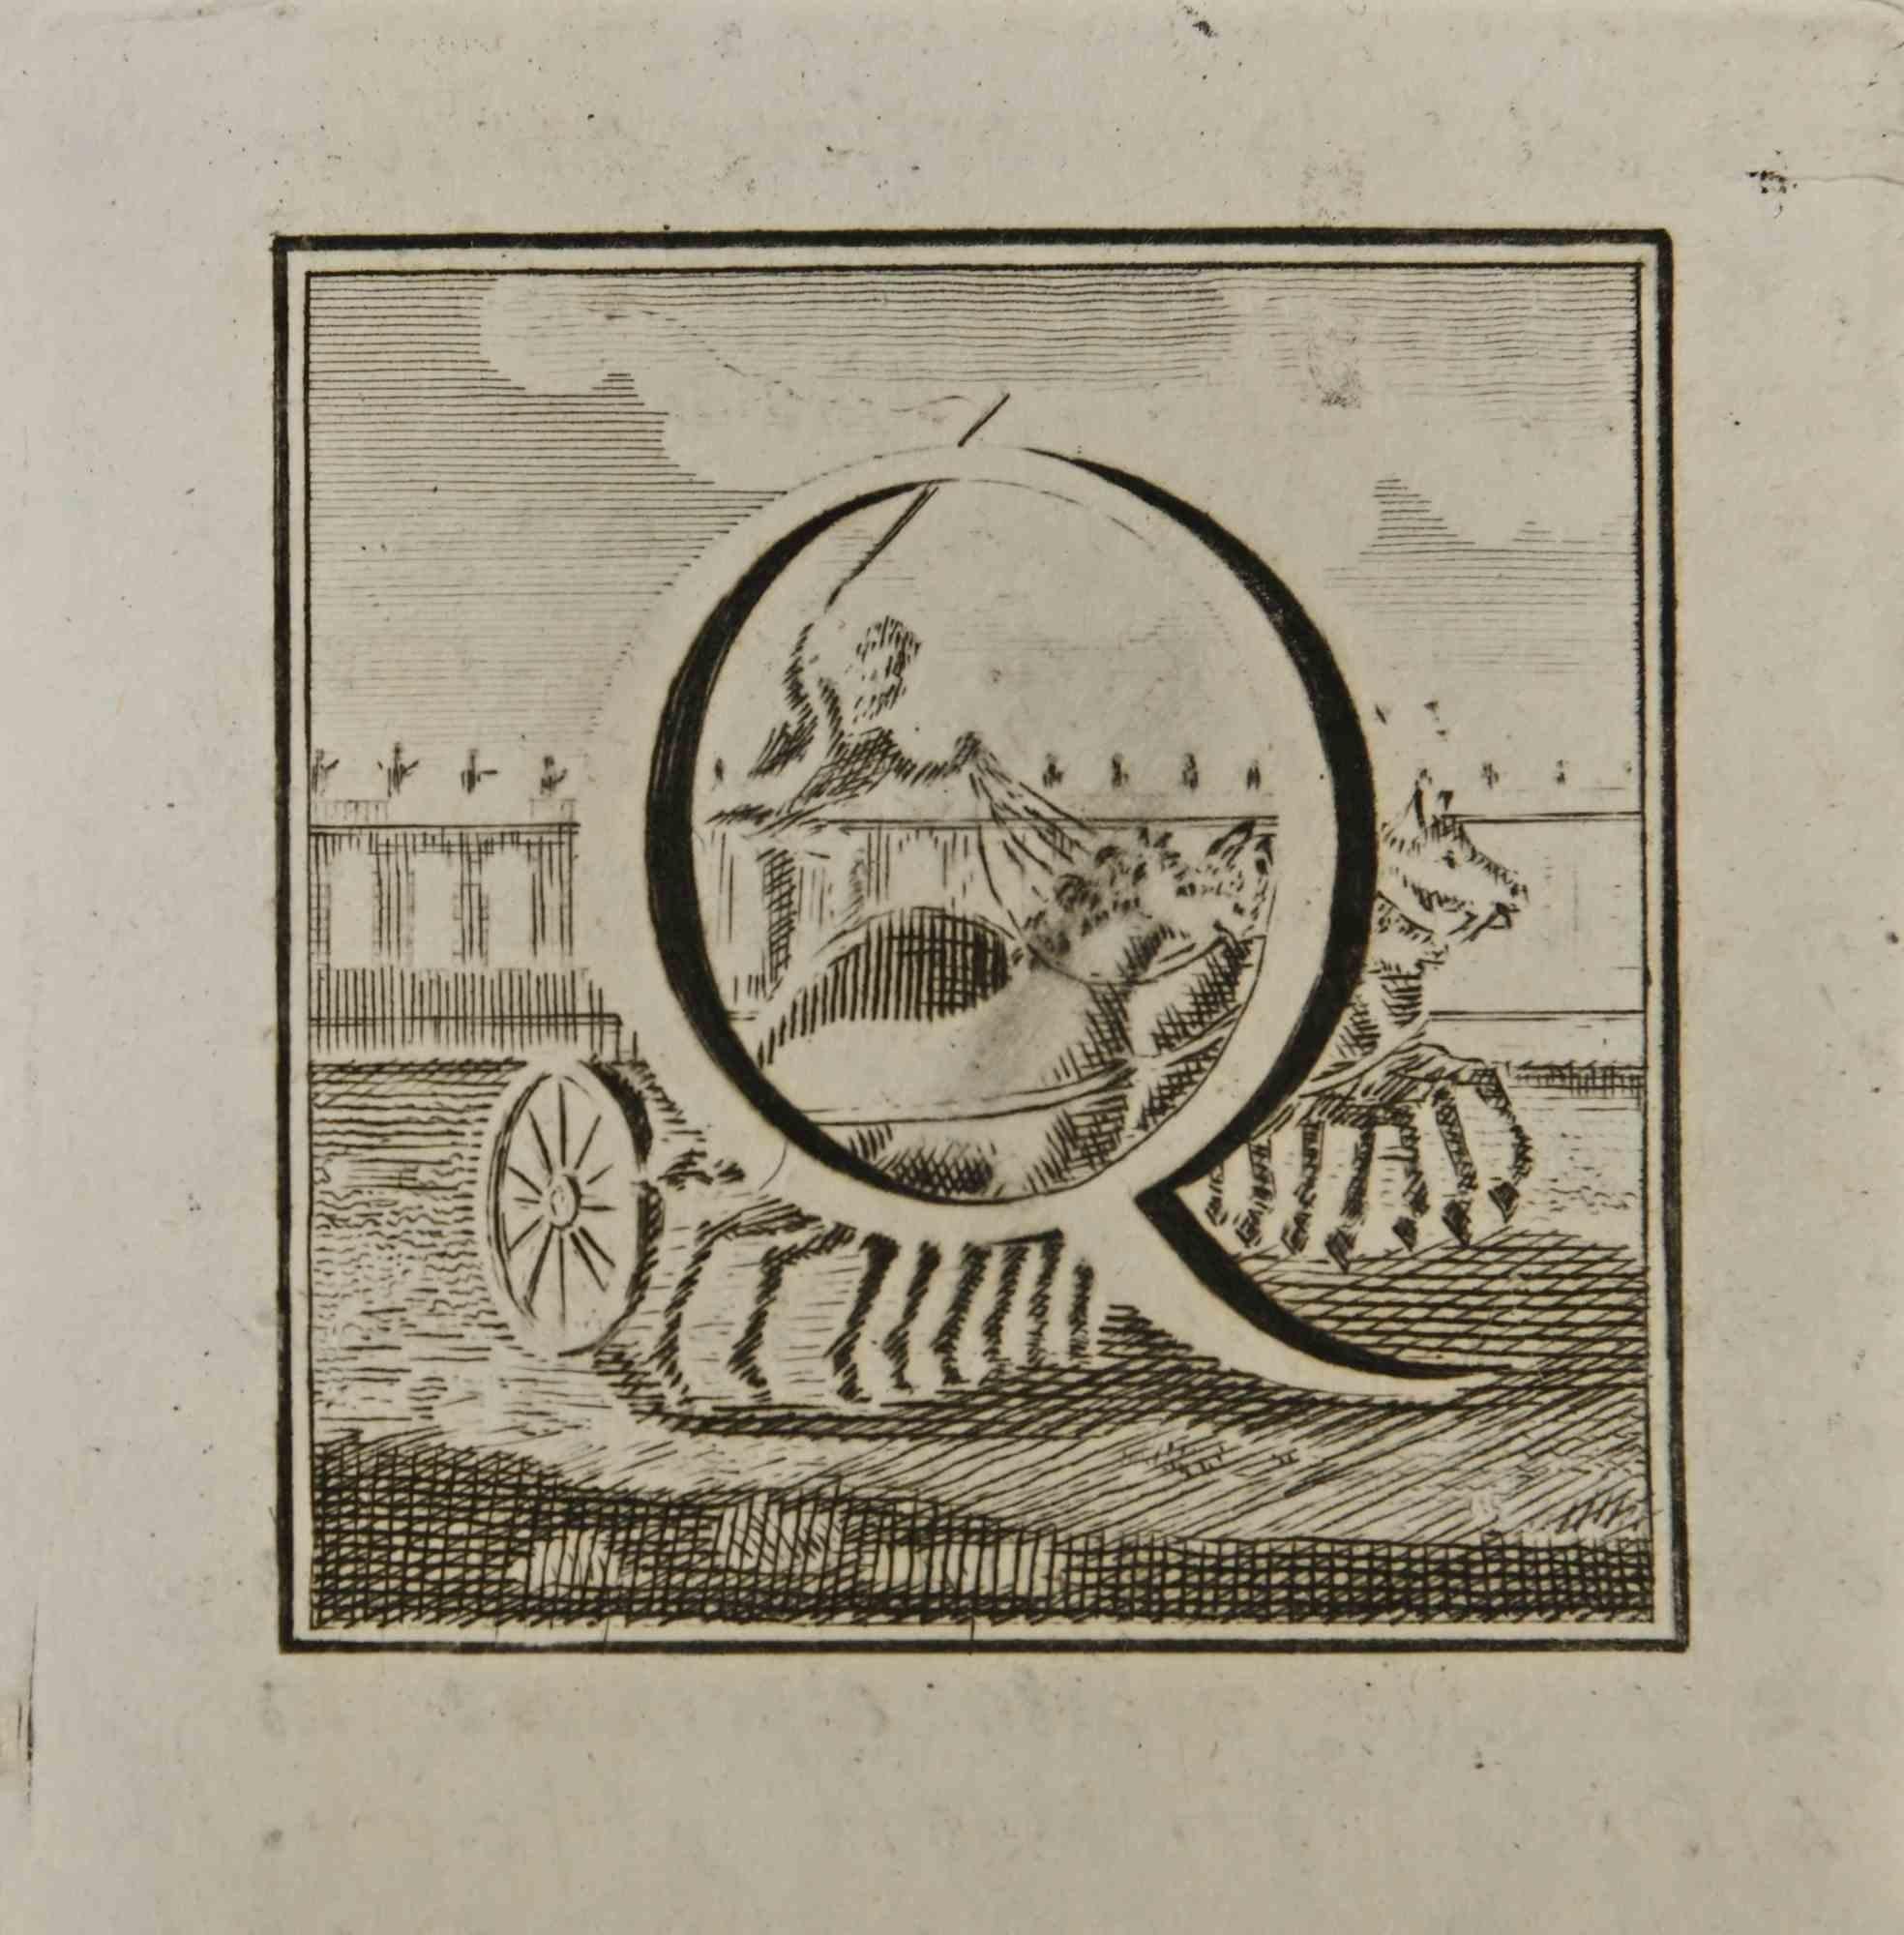 Lettre de l'alphabet Q,  de la série "Antiquités d'Herculanum", est une gravure sur papier réalisée par Luigi Vanvitelli au 18ème siècle.

Bonnes conditions.

La gravure appartient à la suite d'estampes "Antiquités d'Herculanum exposées" (titre